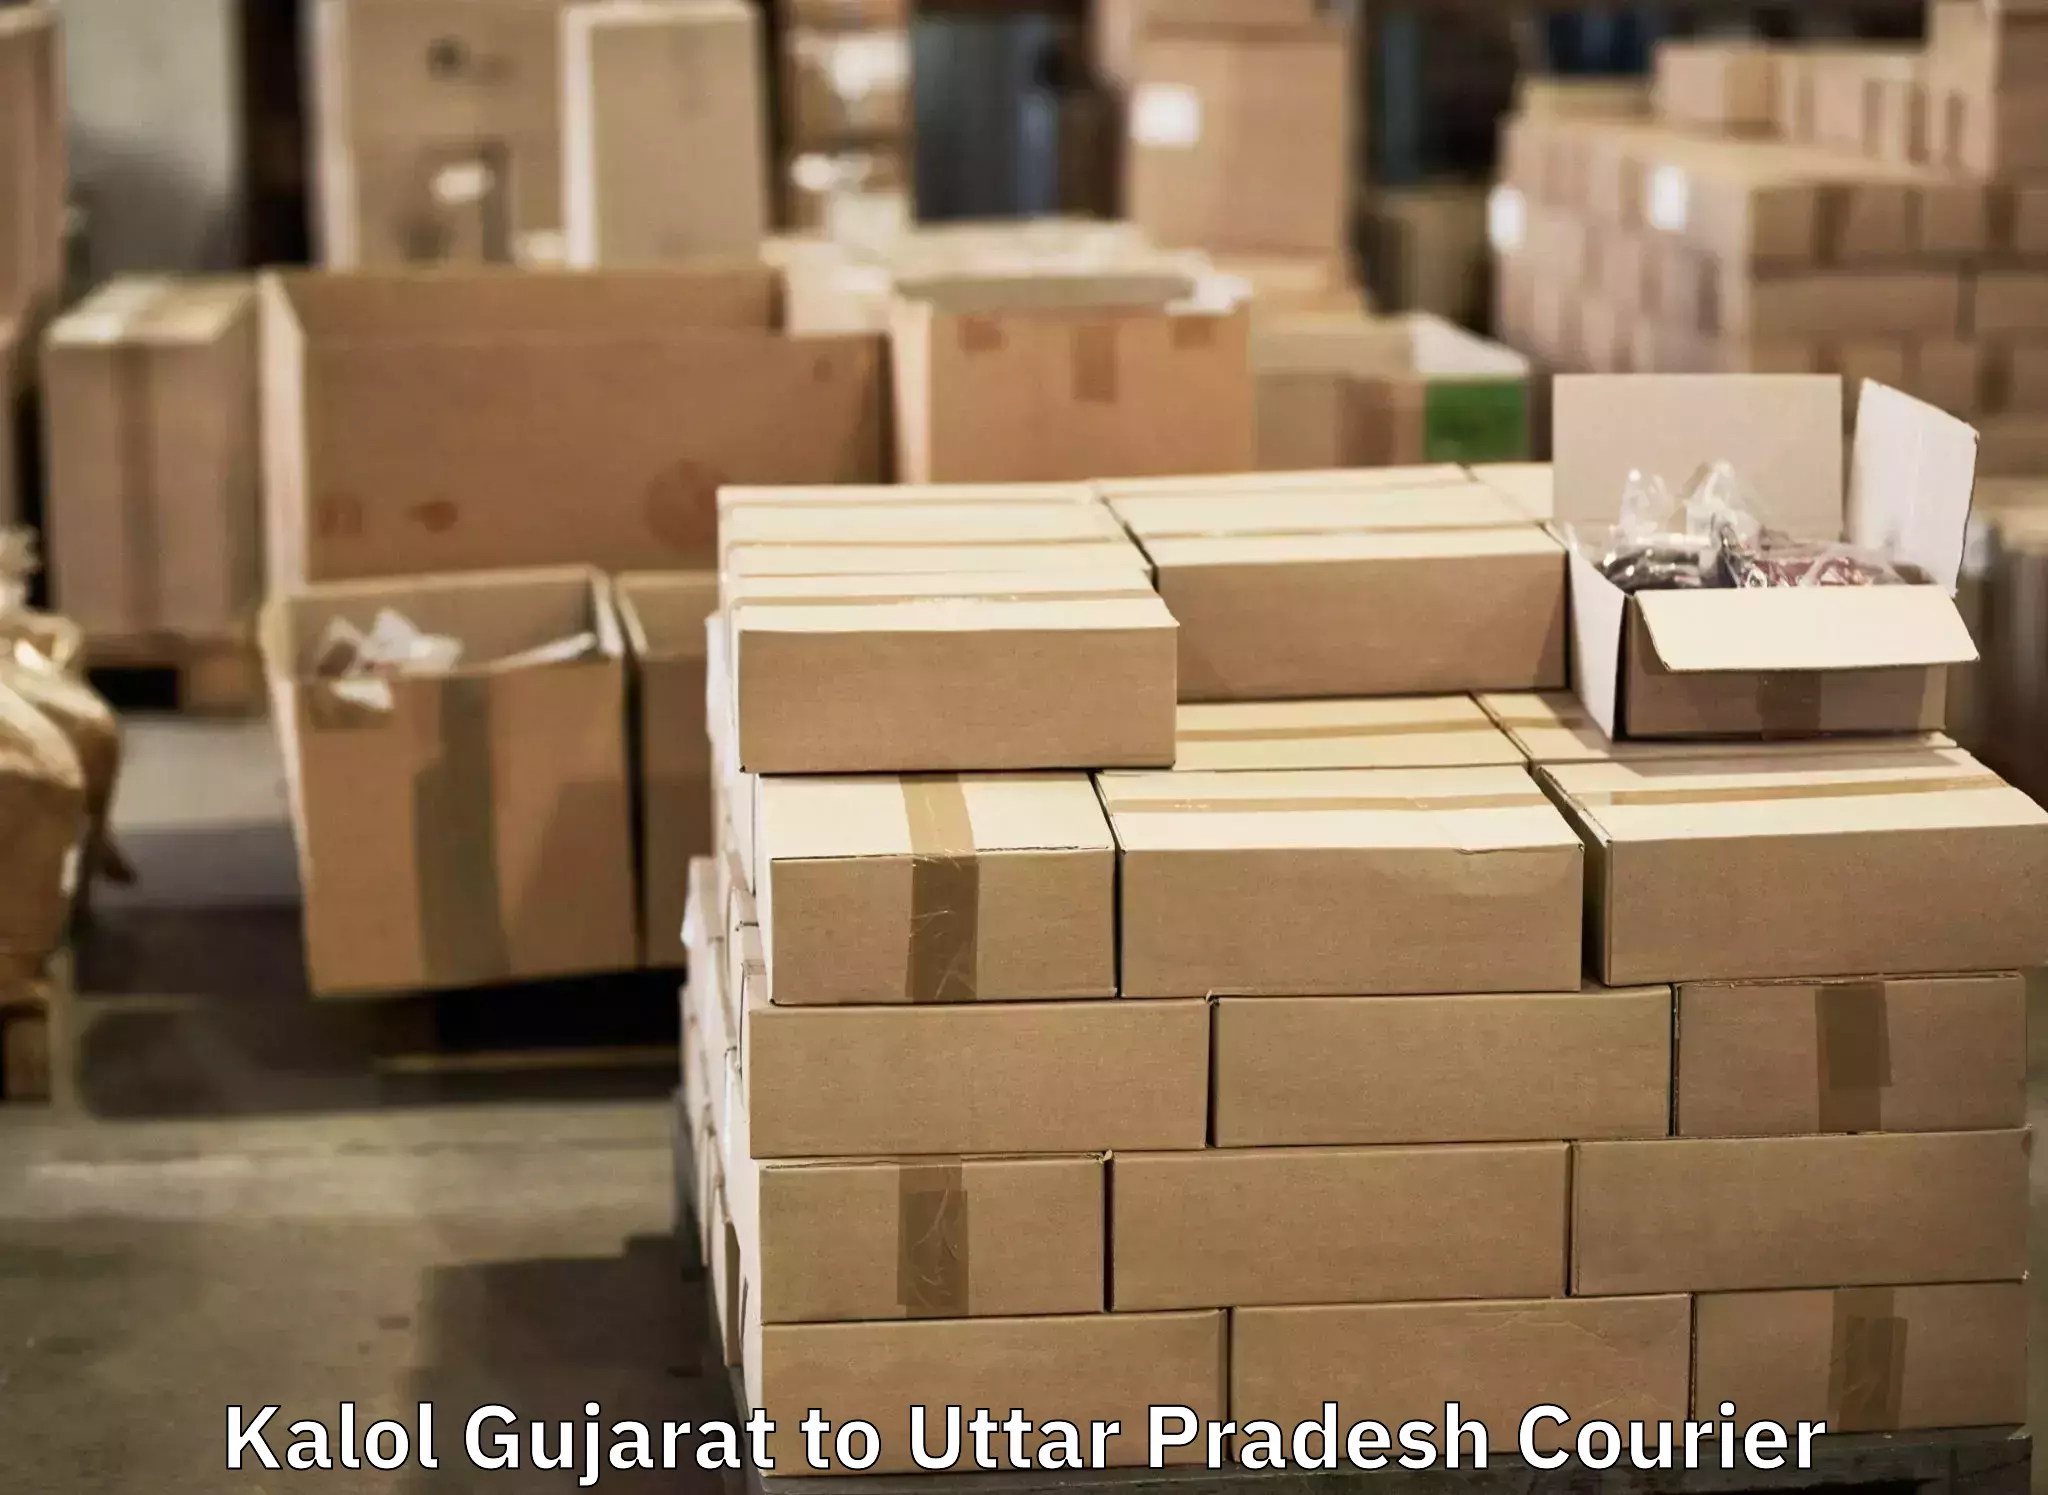 Luggage shipment specialists Kalol Gujarat to Domariyaganj